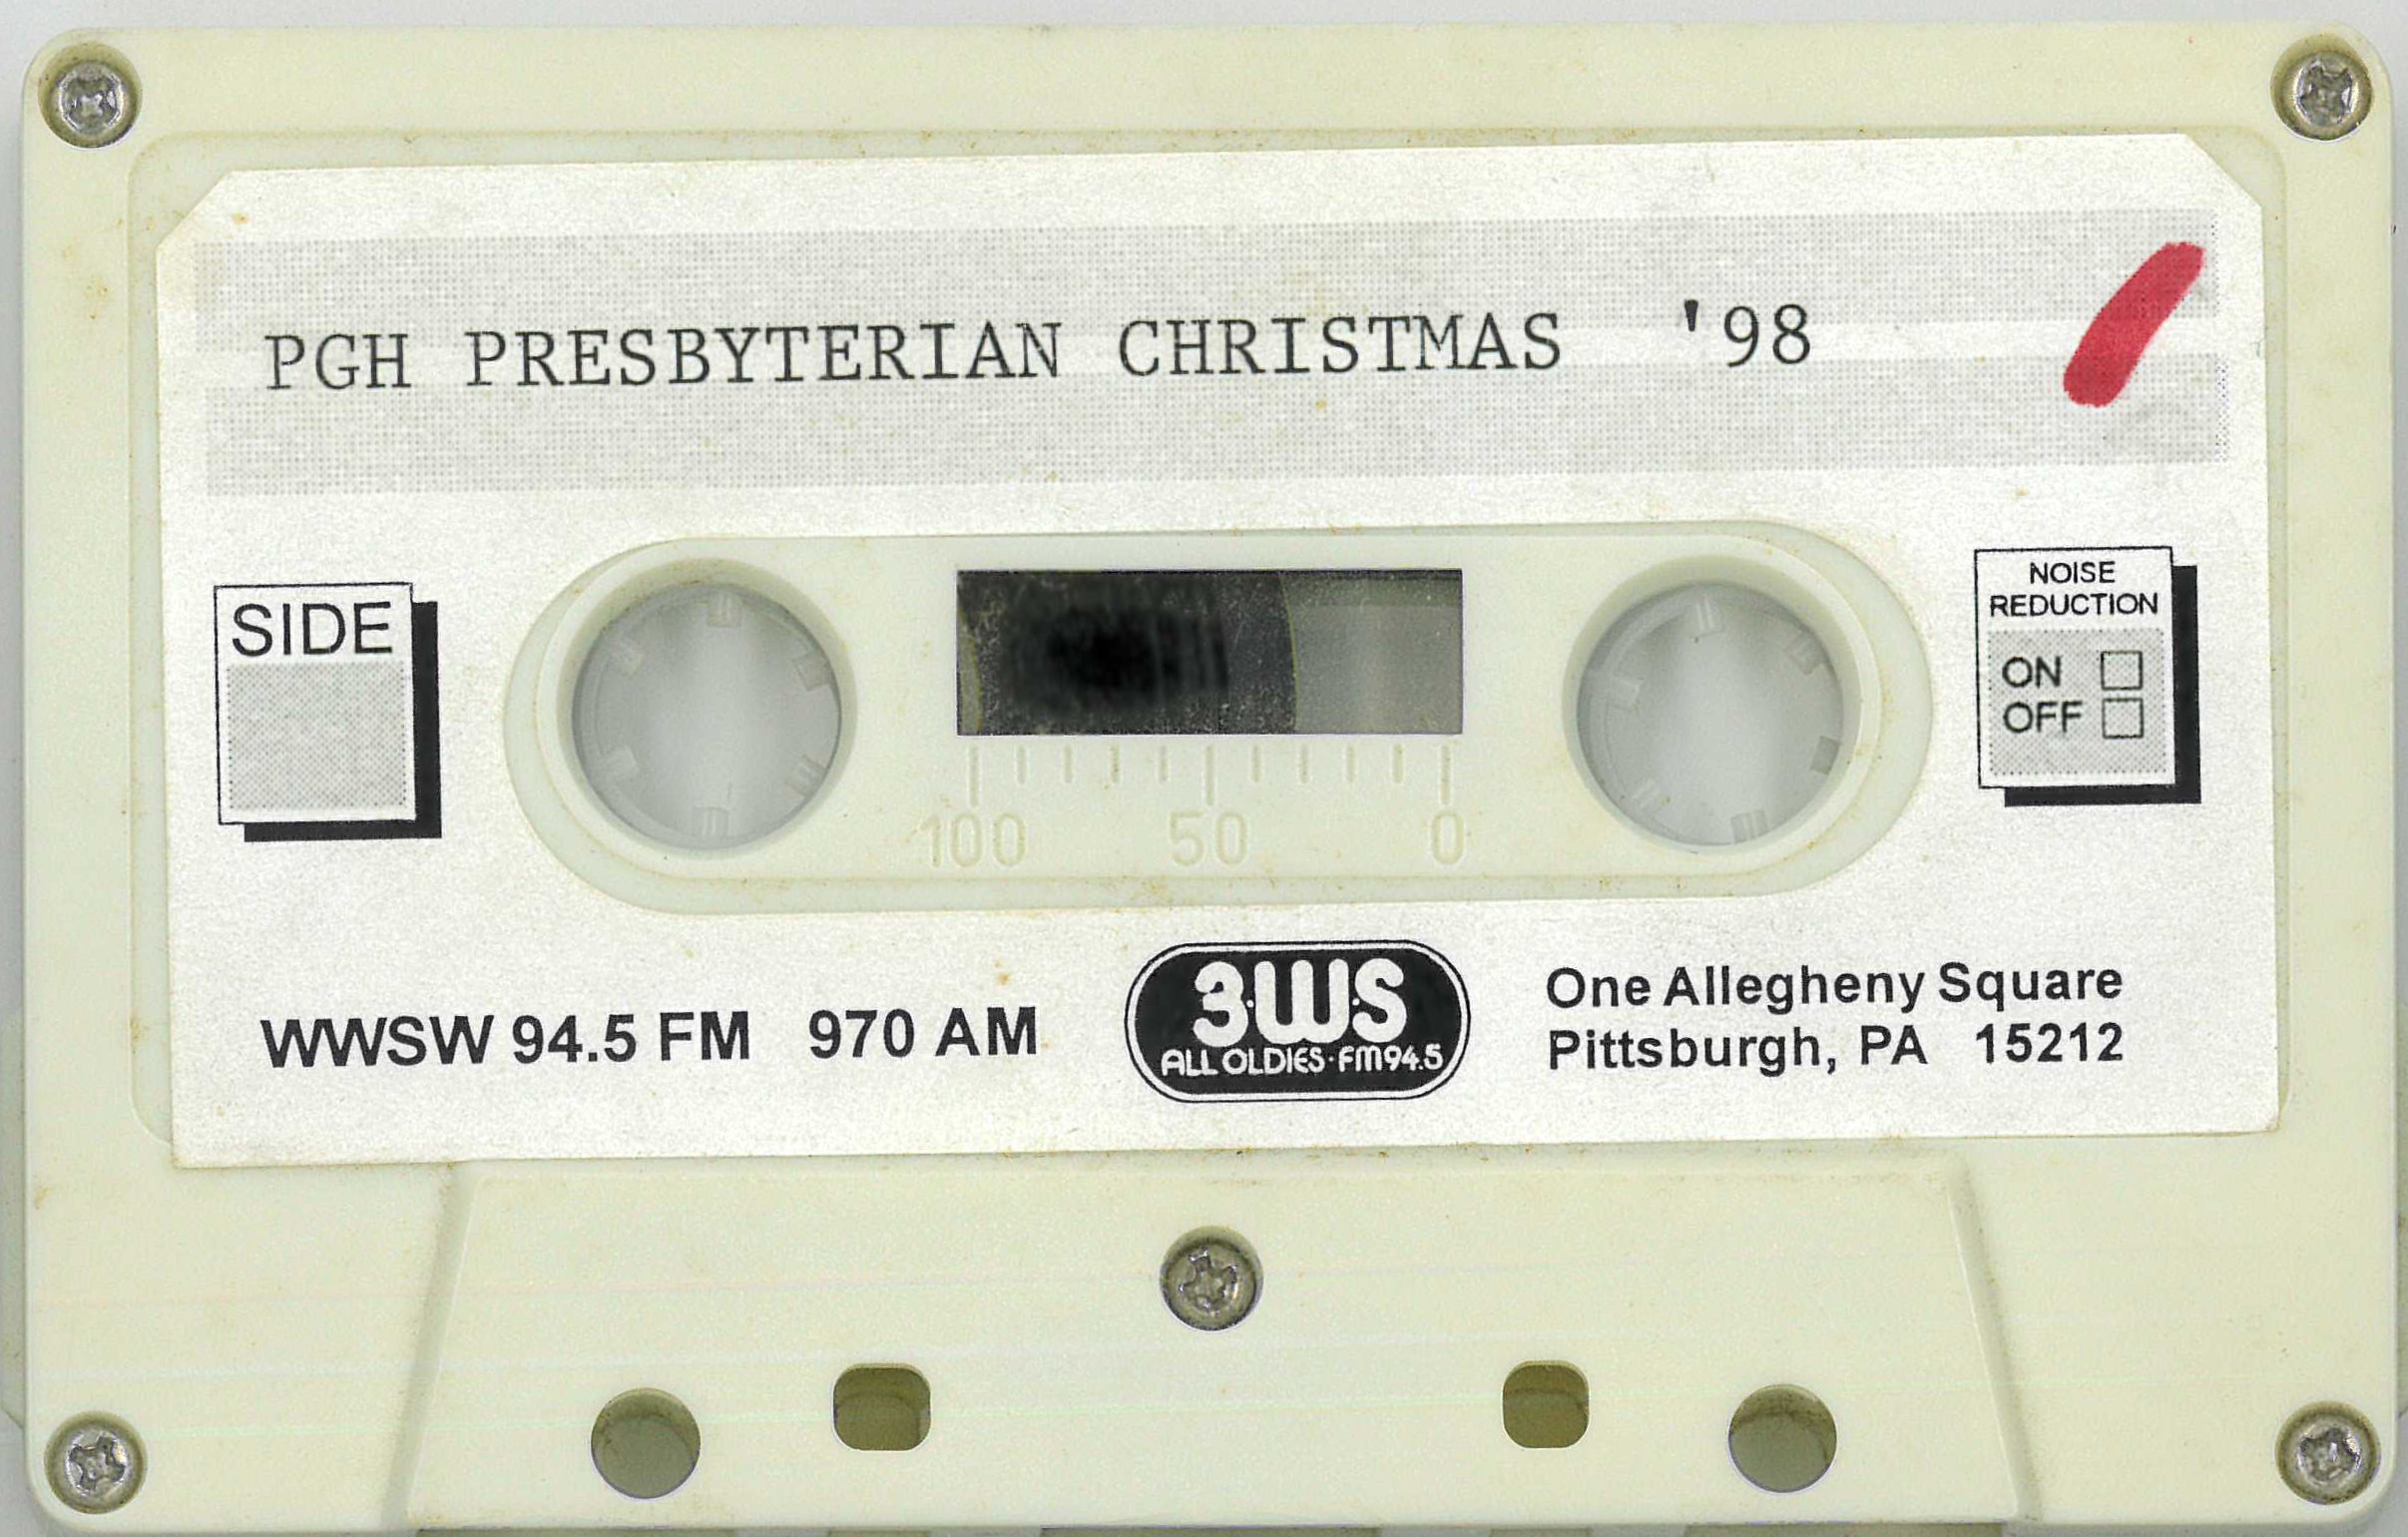 Pittsburgh Presbyterian Christmas, 1998